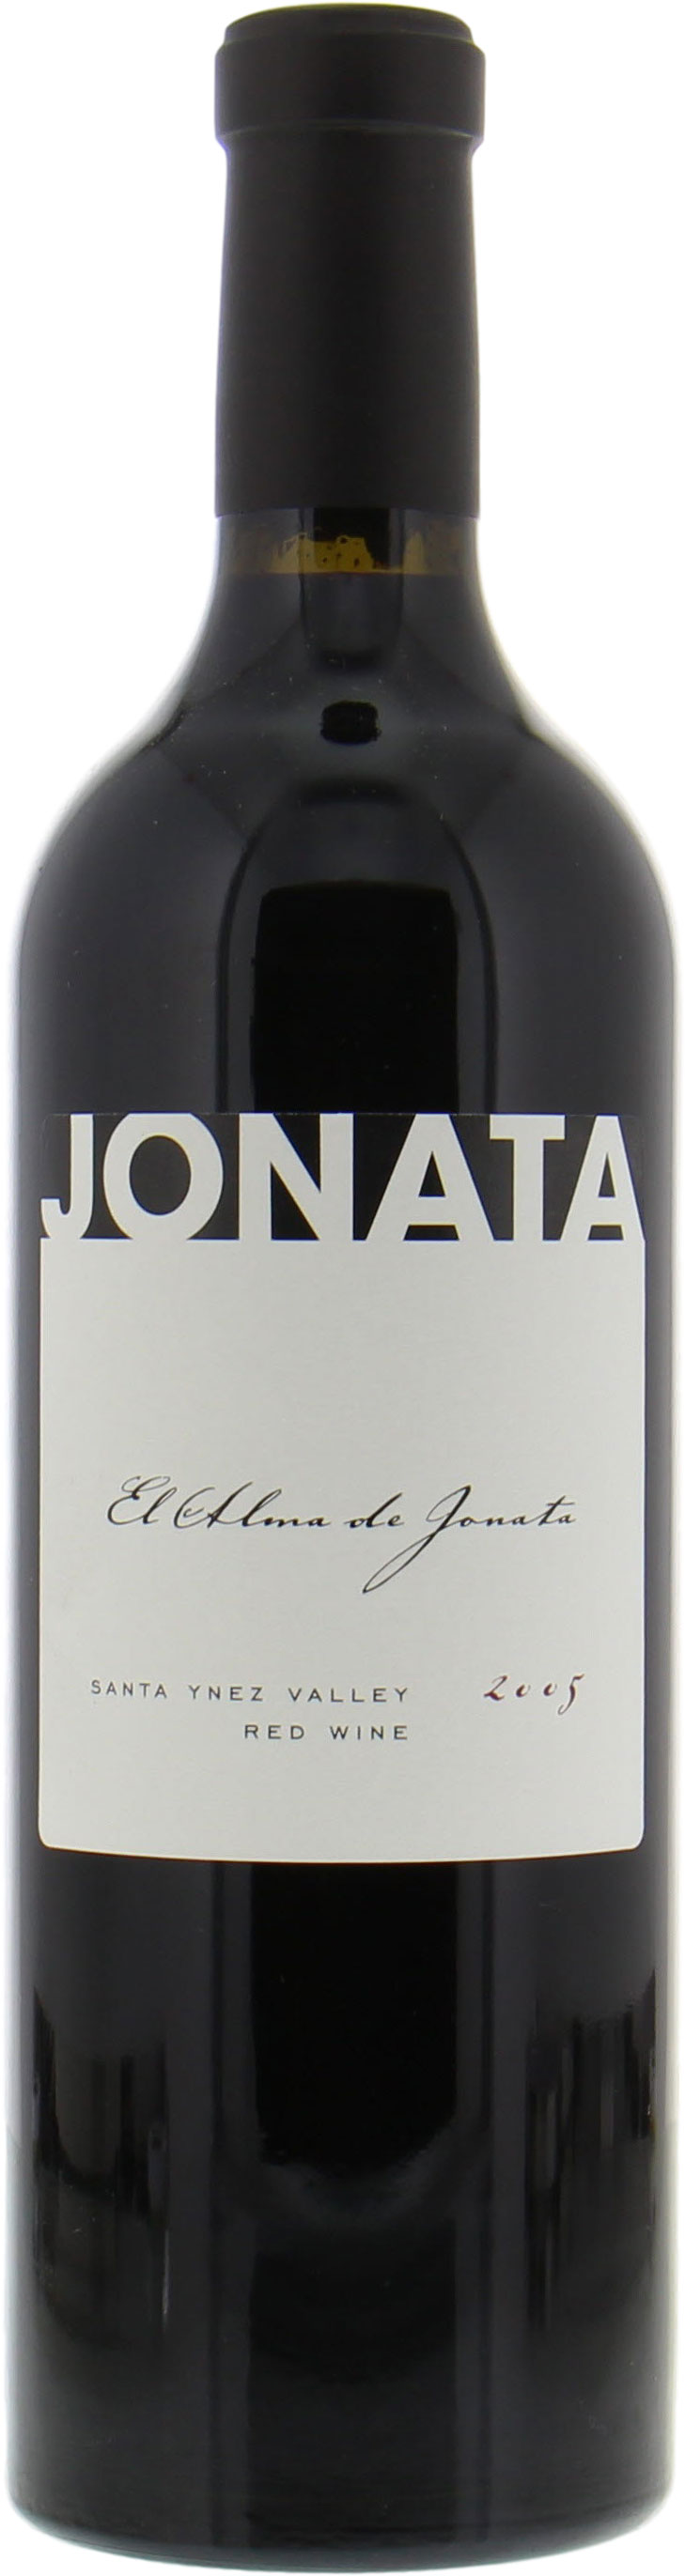 Jonata - El Alma de Jonata 2005